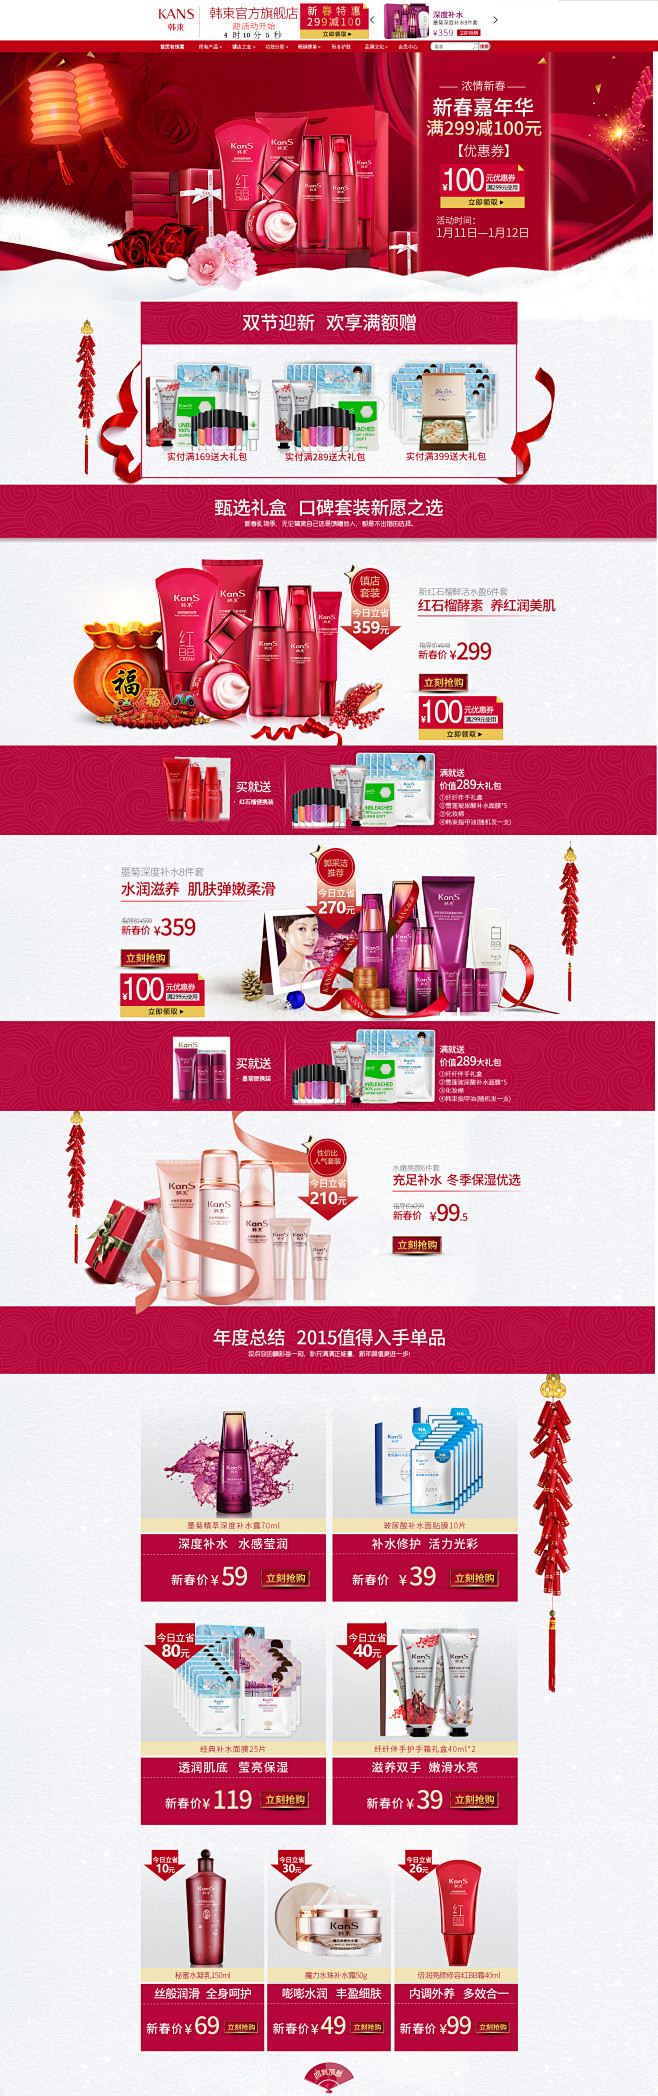 新年美容化妆品首页 韩束官方旗舰店